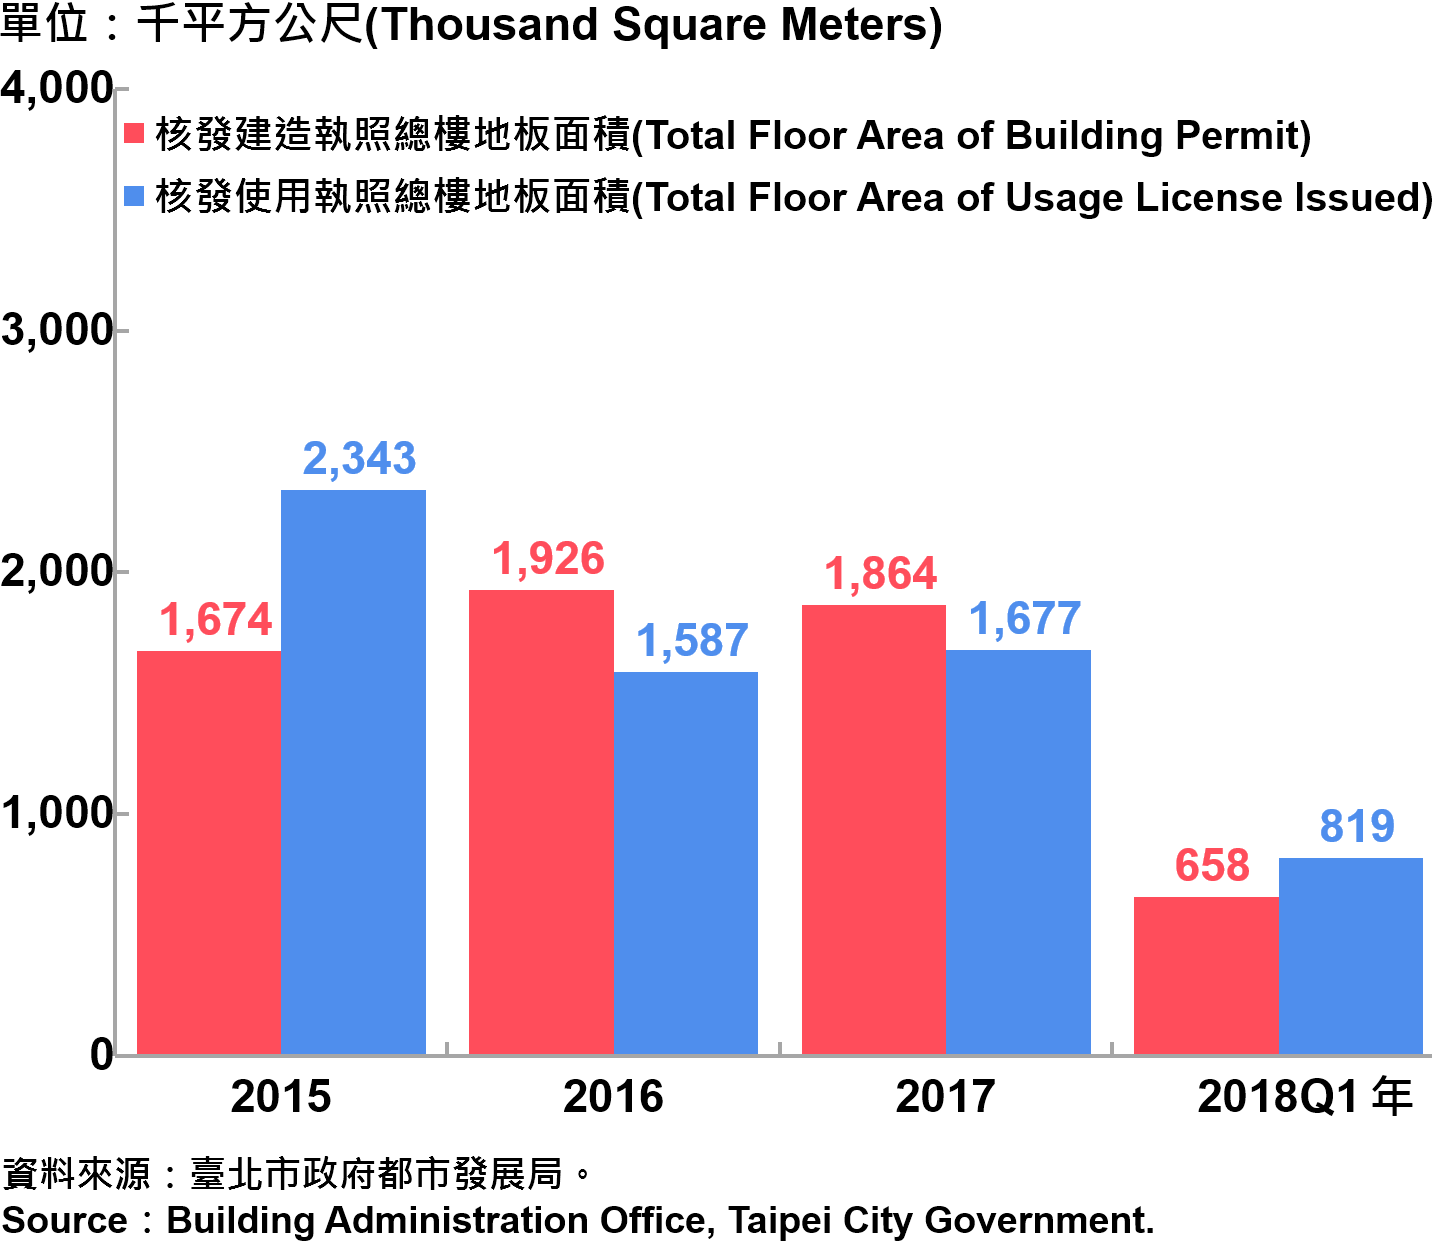 臺北市核發建築物執照與使用執照總樓地板面積—2018Q1 Building with Newly Construction and Using Construction Permits Issued in Taipei City—2018Q1